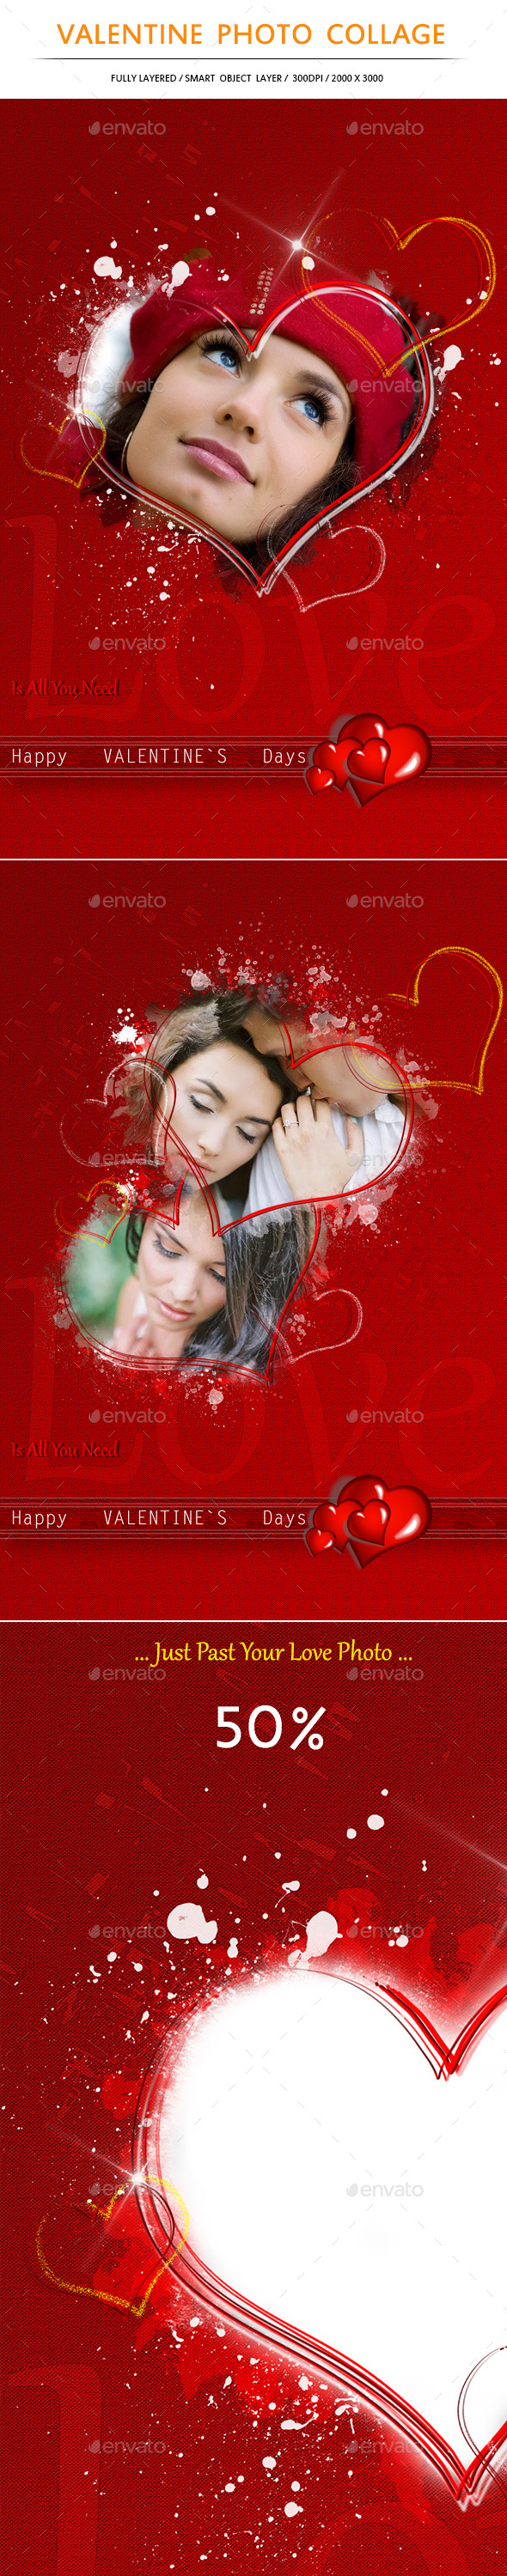 Valentine Photo Collage